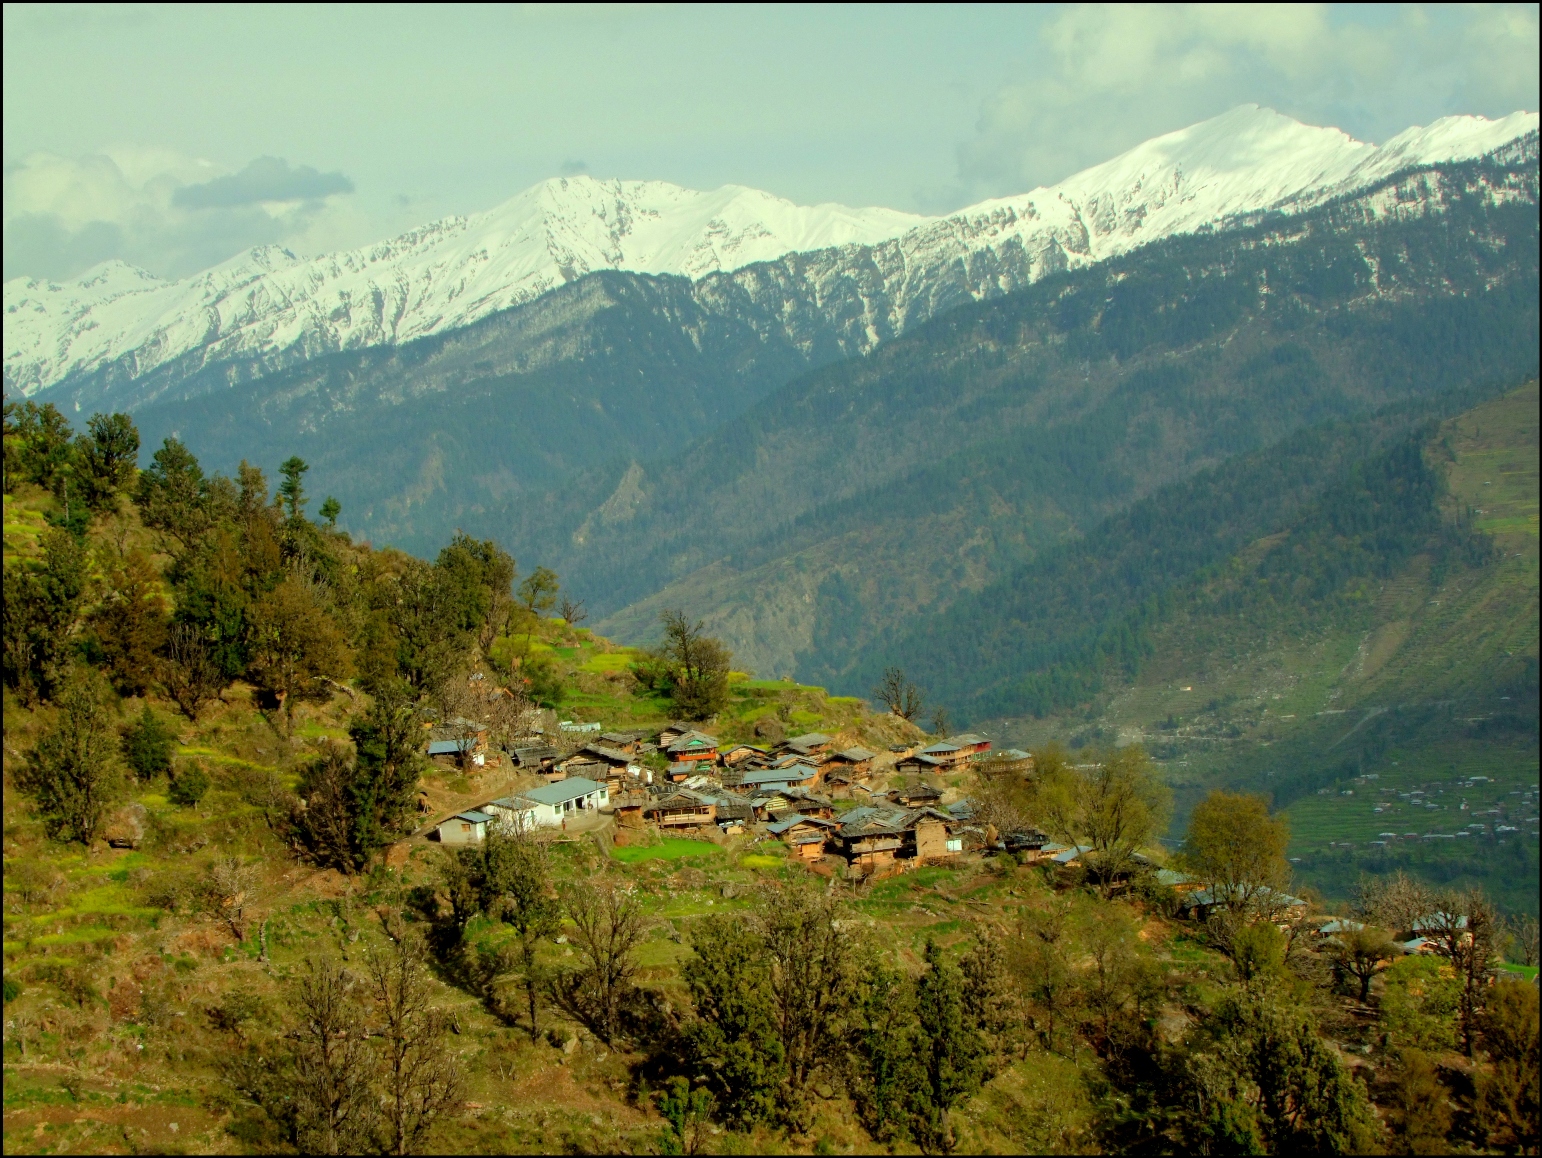 Kalap, a tranquil Himalayan village